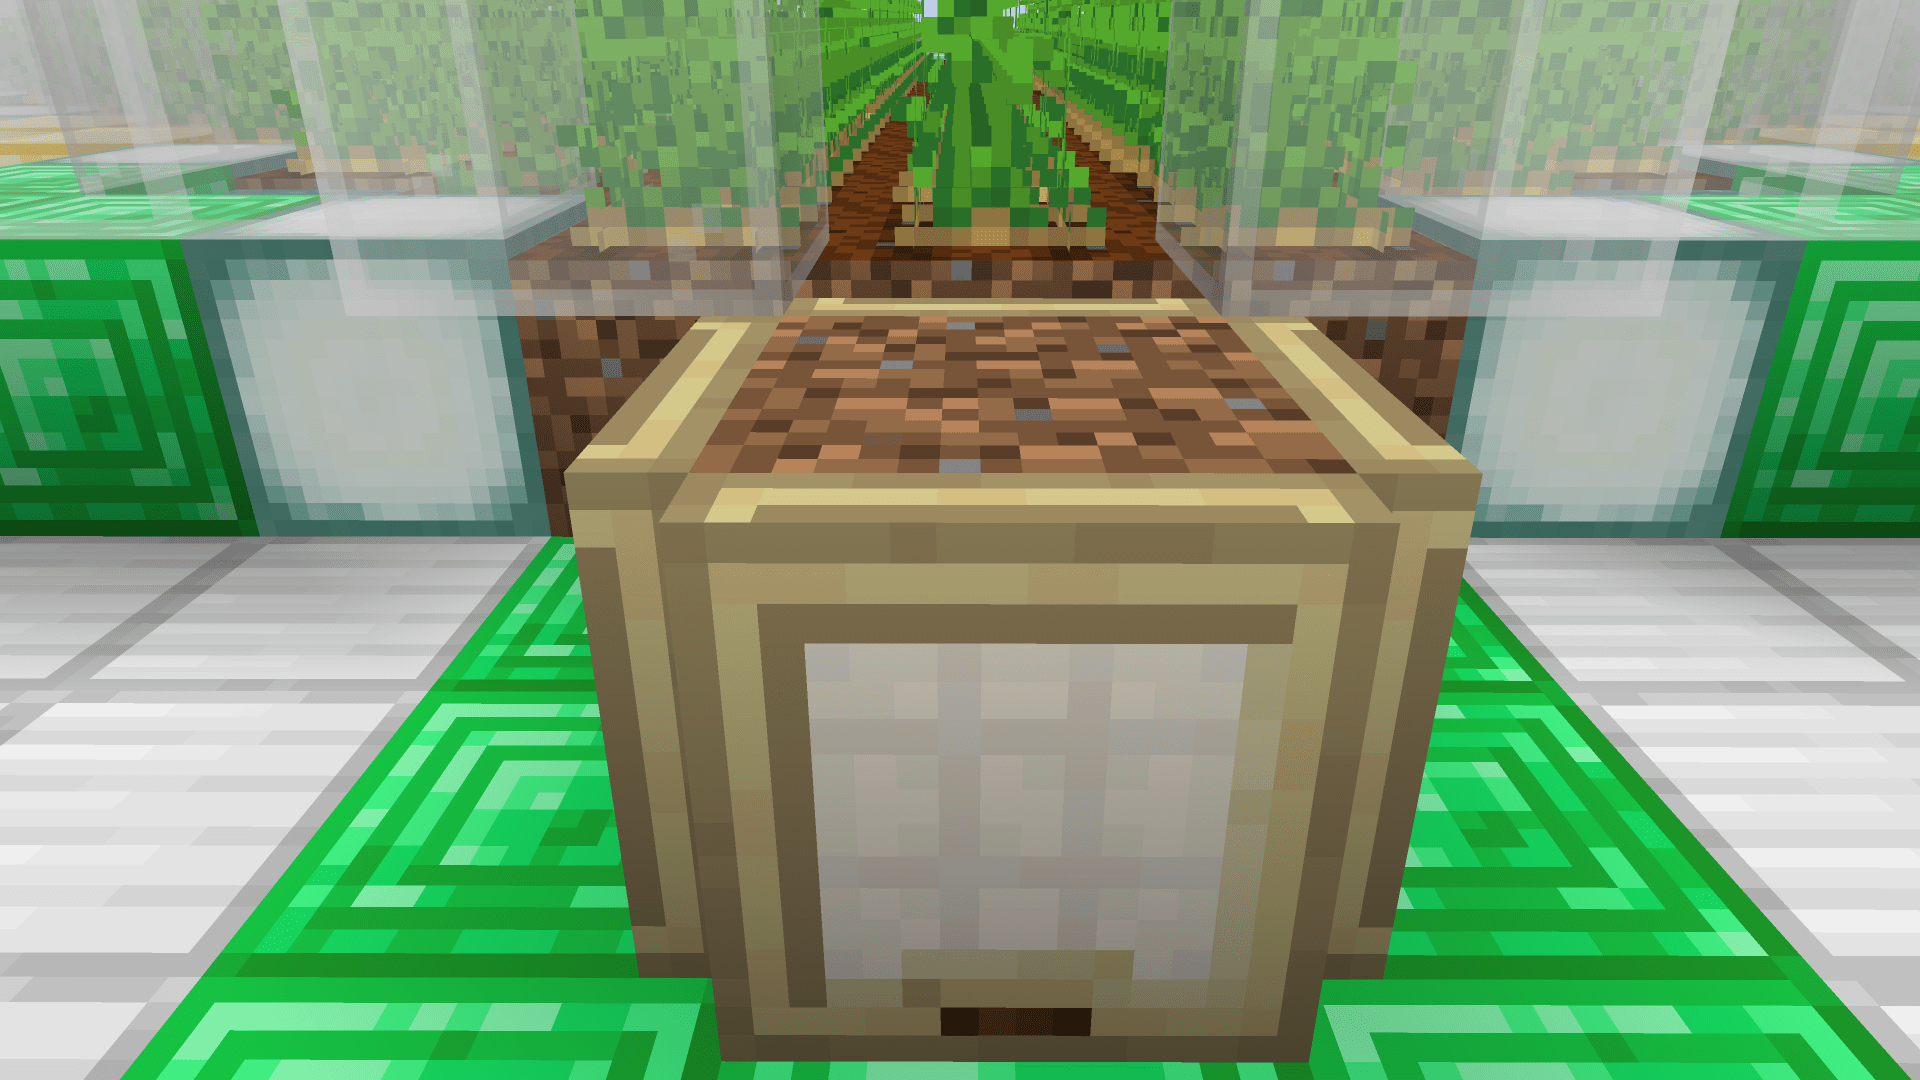 Va rimosso poi il blocco di terra per far accoppiarci i villagers dentro. In Minecraft funziona così.